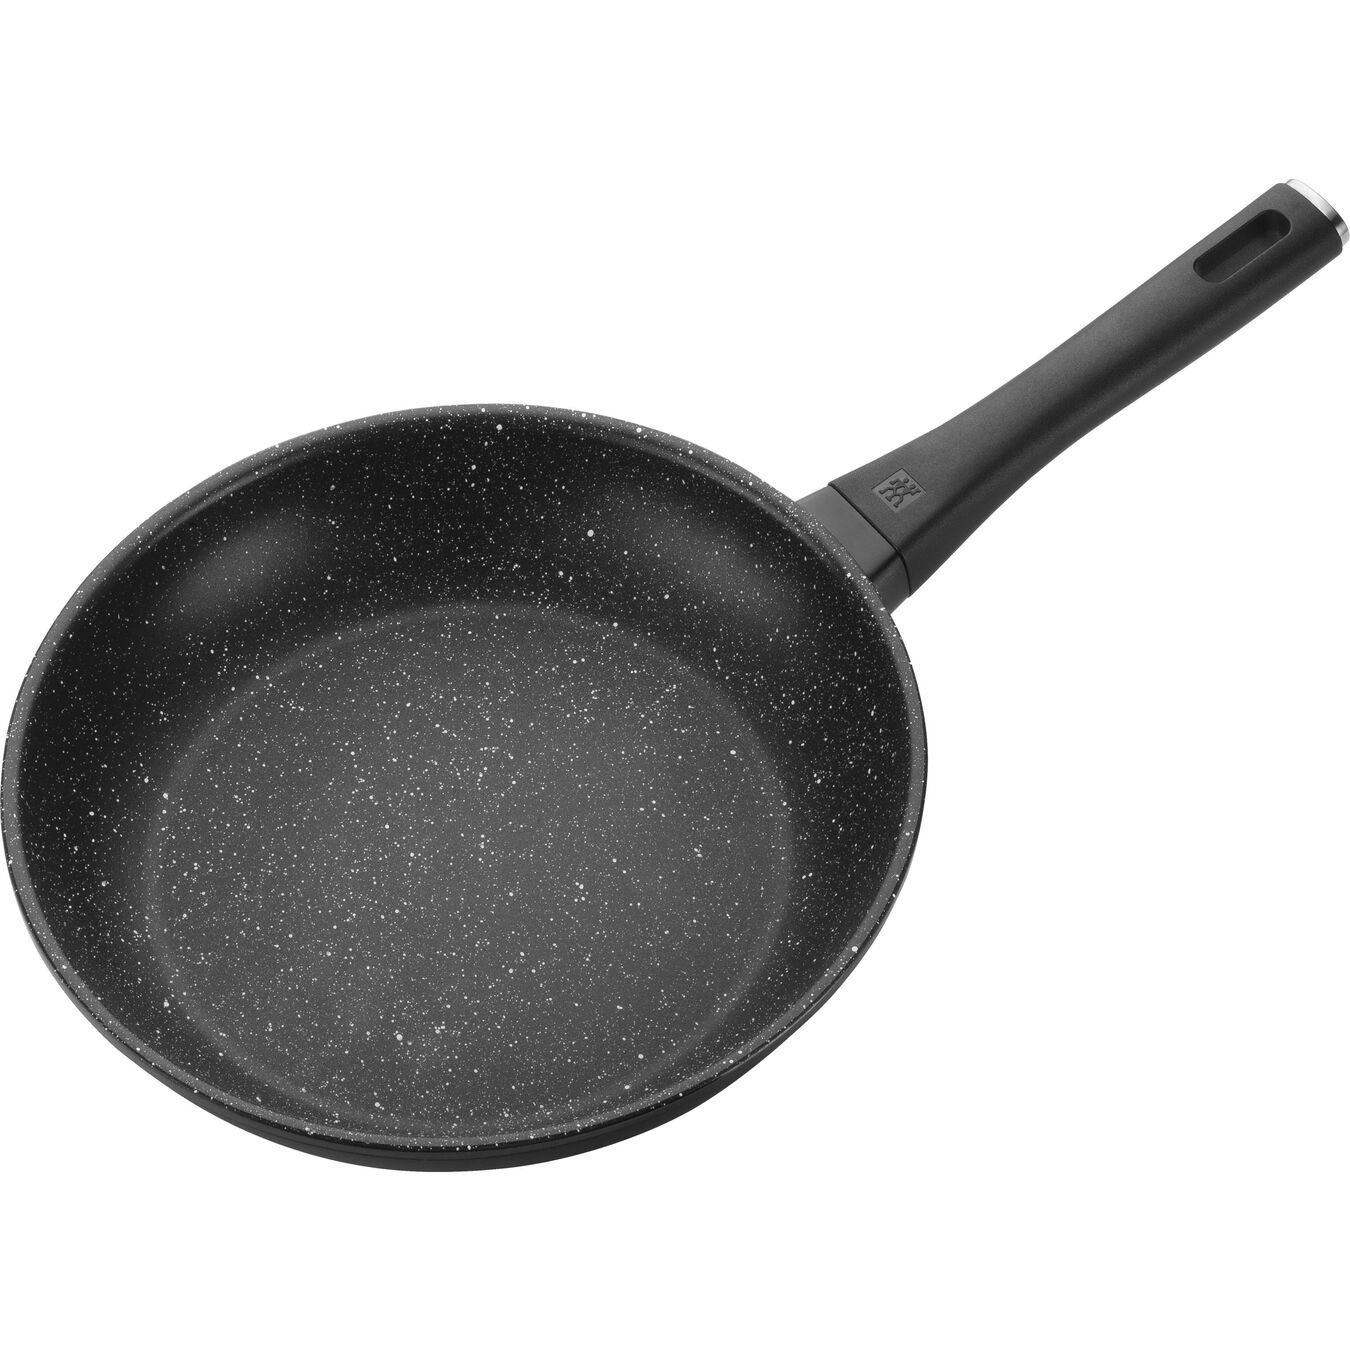 26 cm Aluminium Frying pan black,,large 6